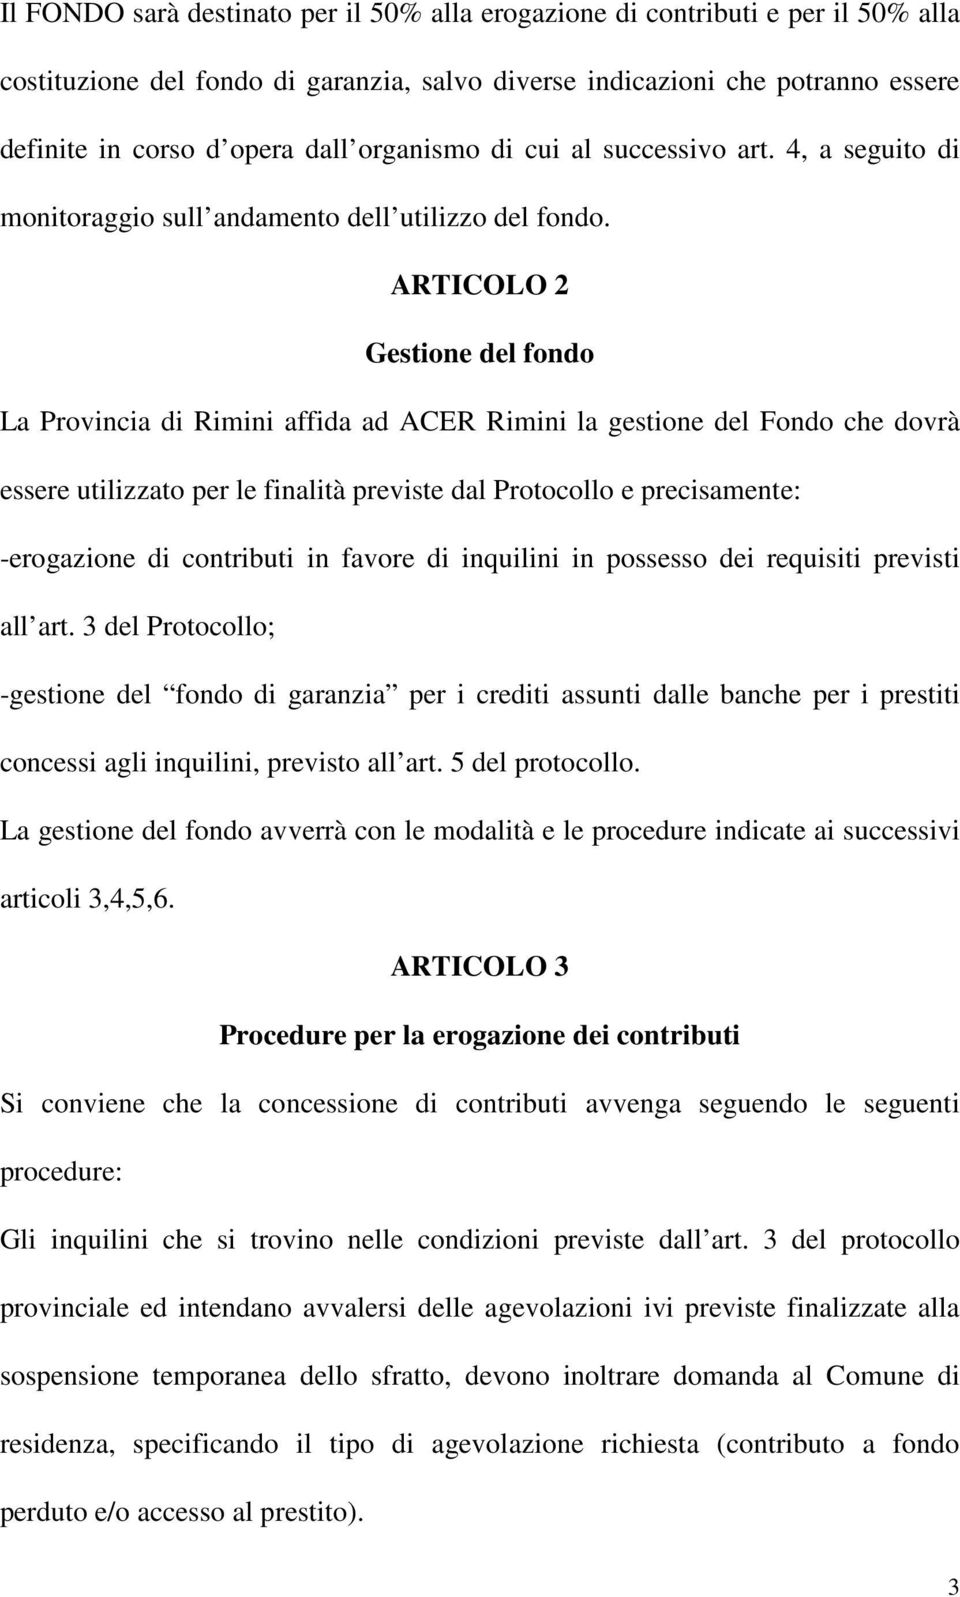 ARTICOLO 2 Gestione del fondo La Provincia di Rimini affida ad ACER Rimini la gestione del Fondo che dovrà essere utilizzato per le finalità previste dal Protocollo e precisamente: -erogazione di